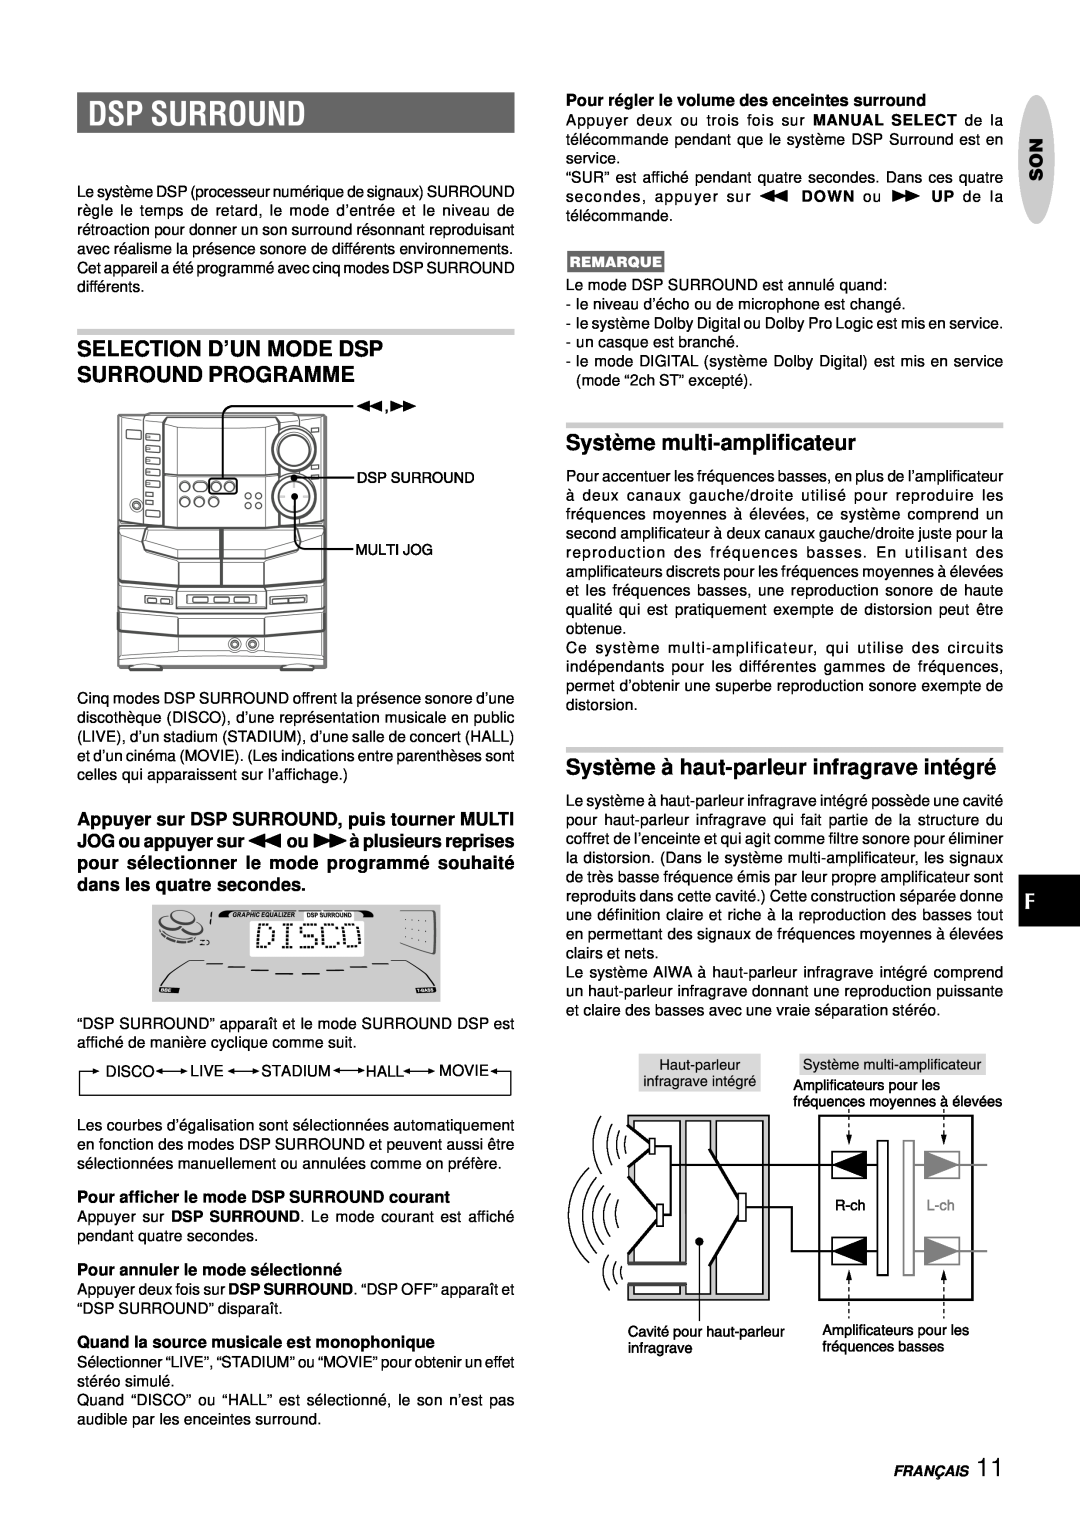 Aiwa NSX-DS8 Selection D’Un Mode Dsp Surround Programme, Systè me multi-amplificateur, Pour annuler le mode sé lectionné 